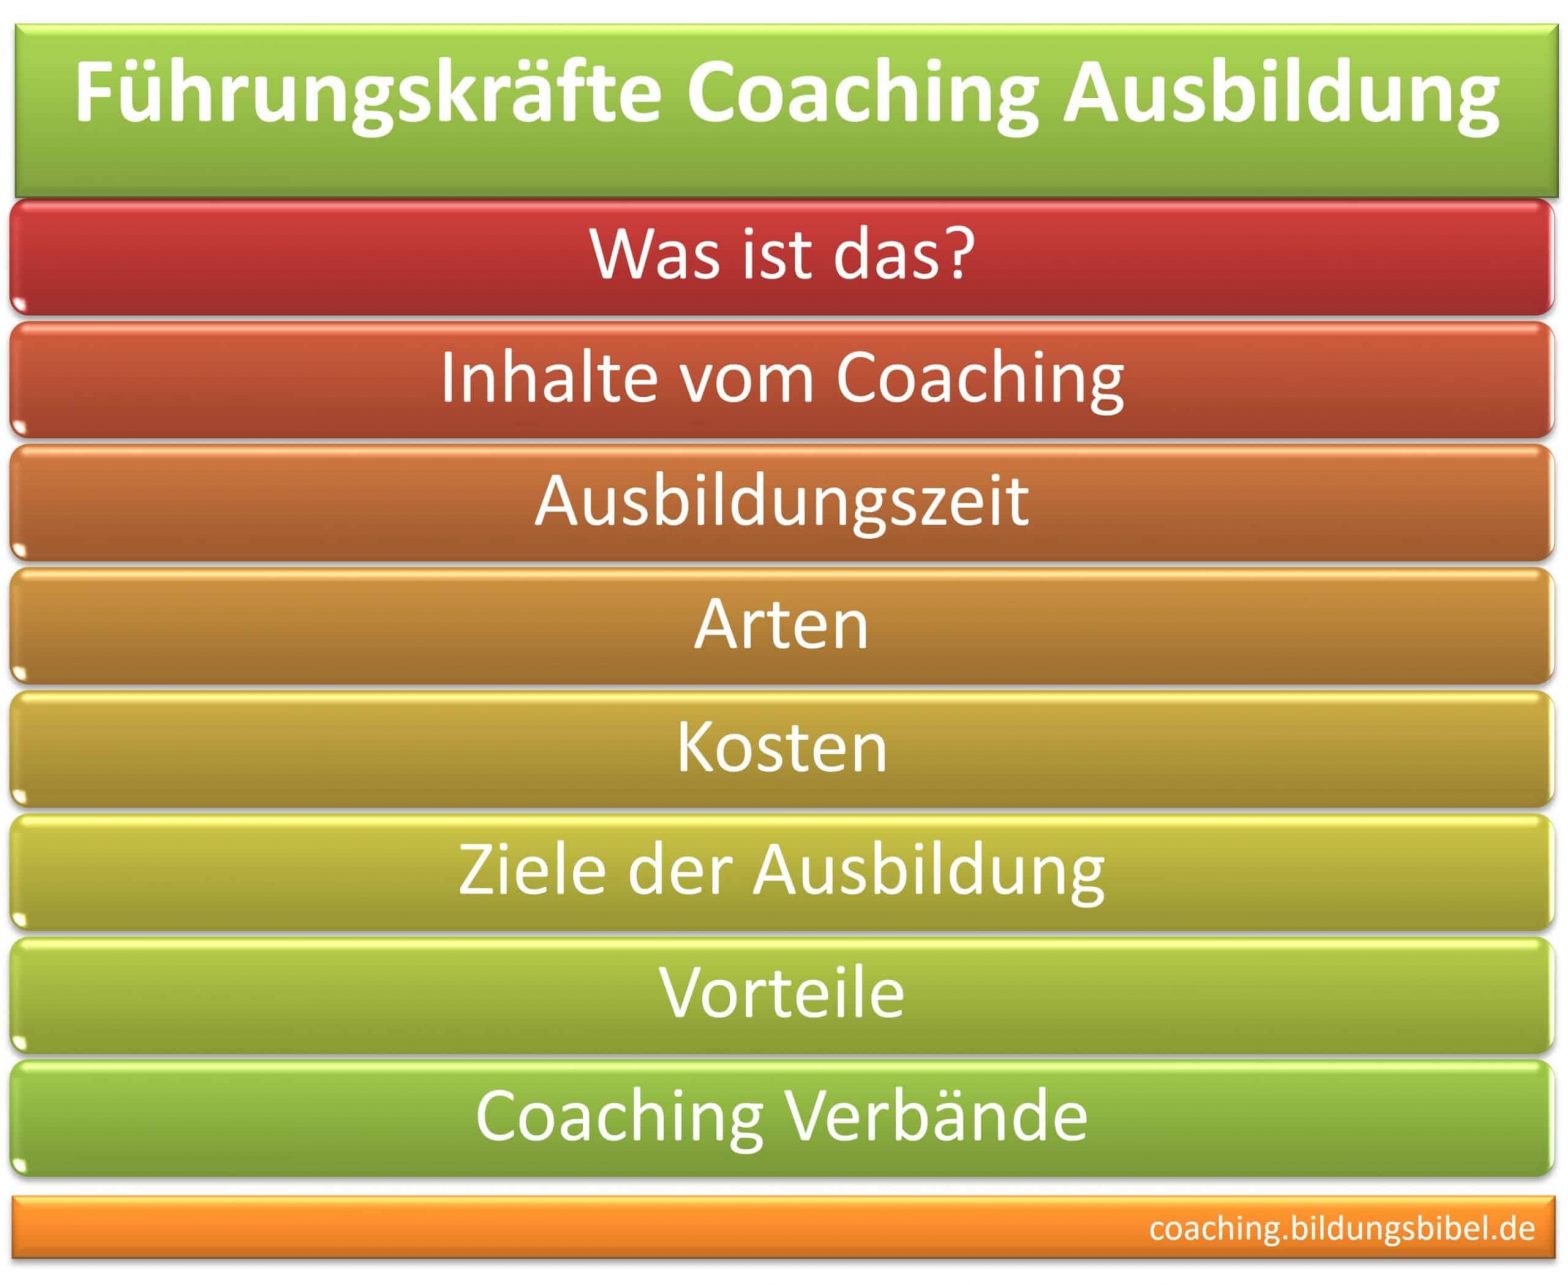 Führungskräfte Coaching Ausbildung, Infos zu Kosten, Inhalt, Dauer, Ziele, Vorteile, Einzelcoaching, Gruppencoaching, Studiengang Coaching.